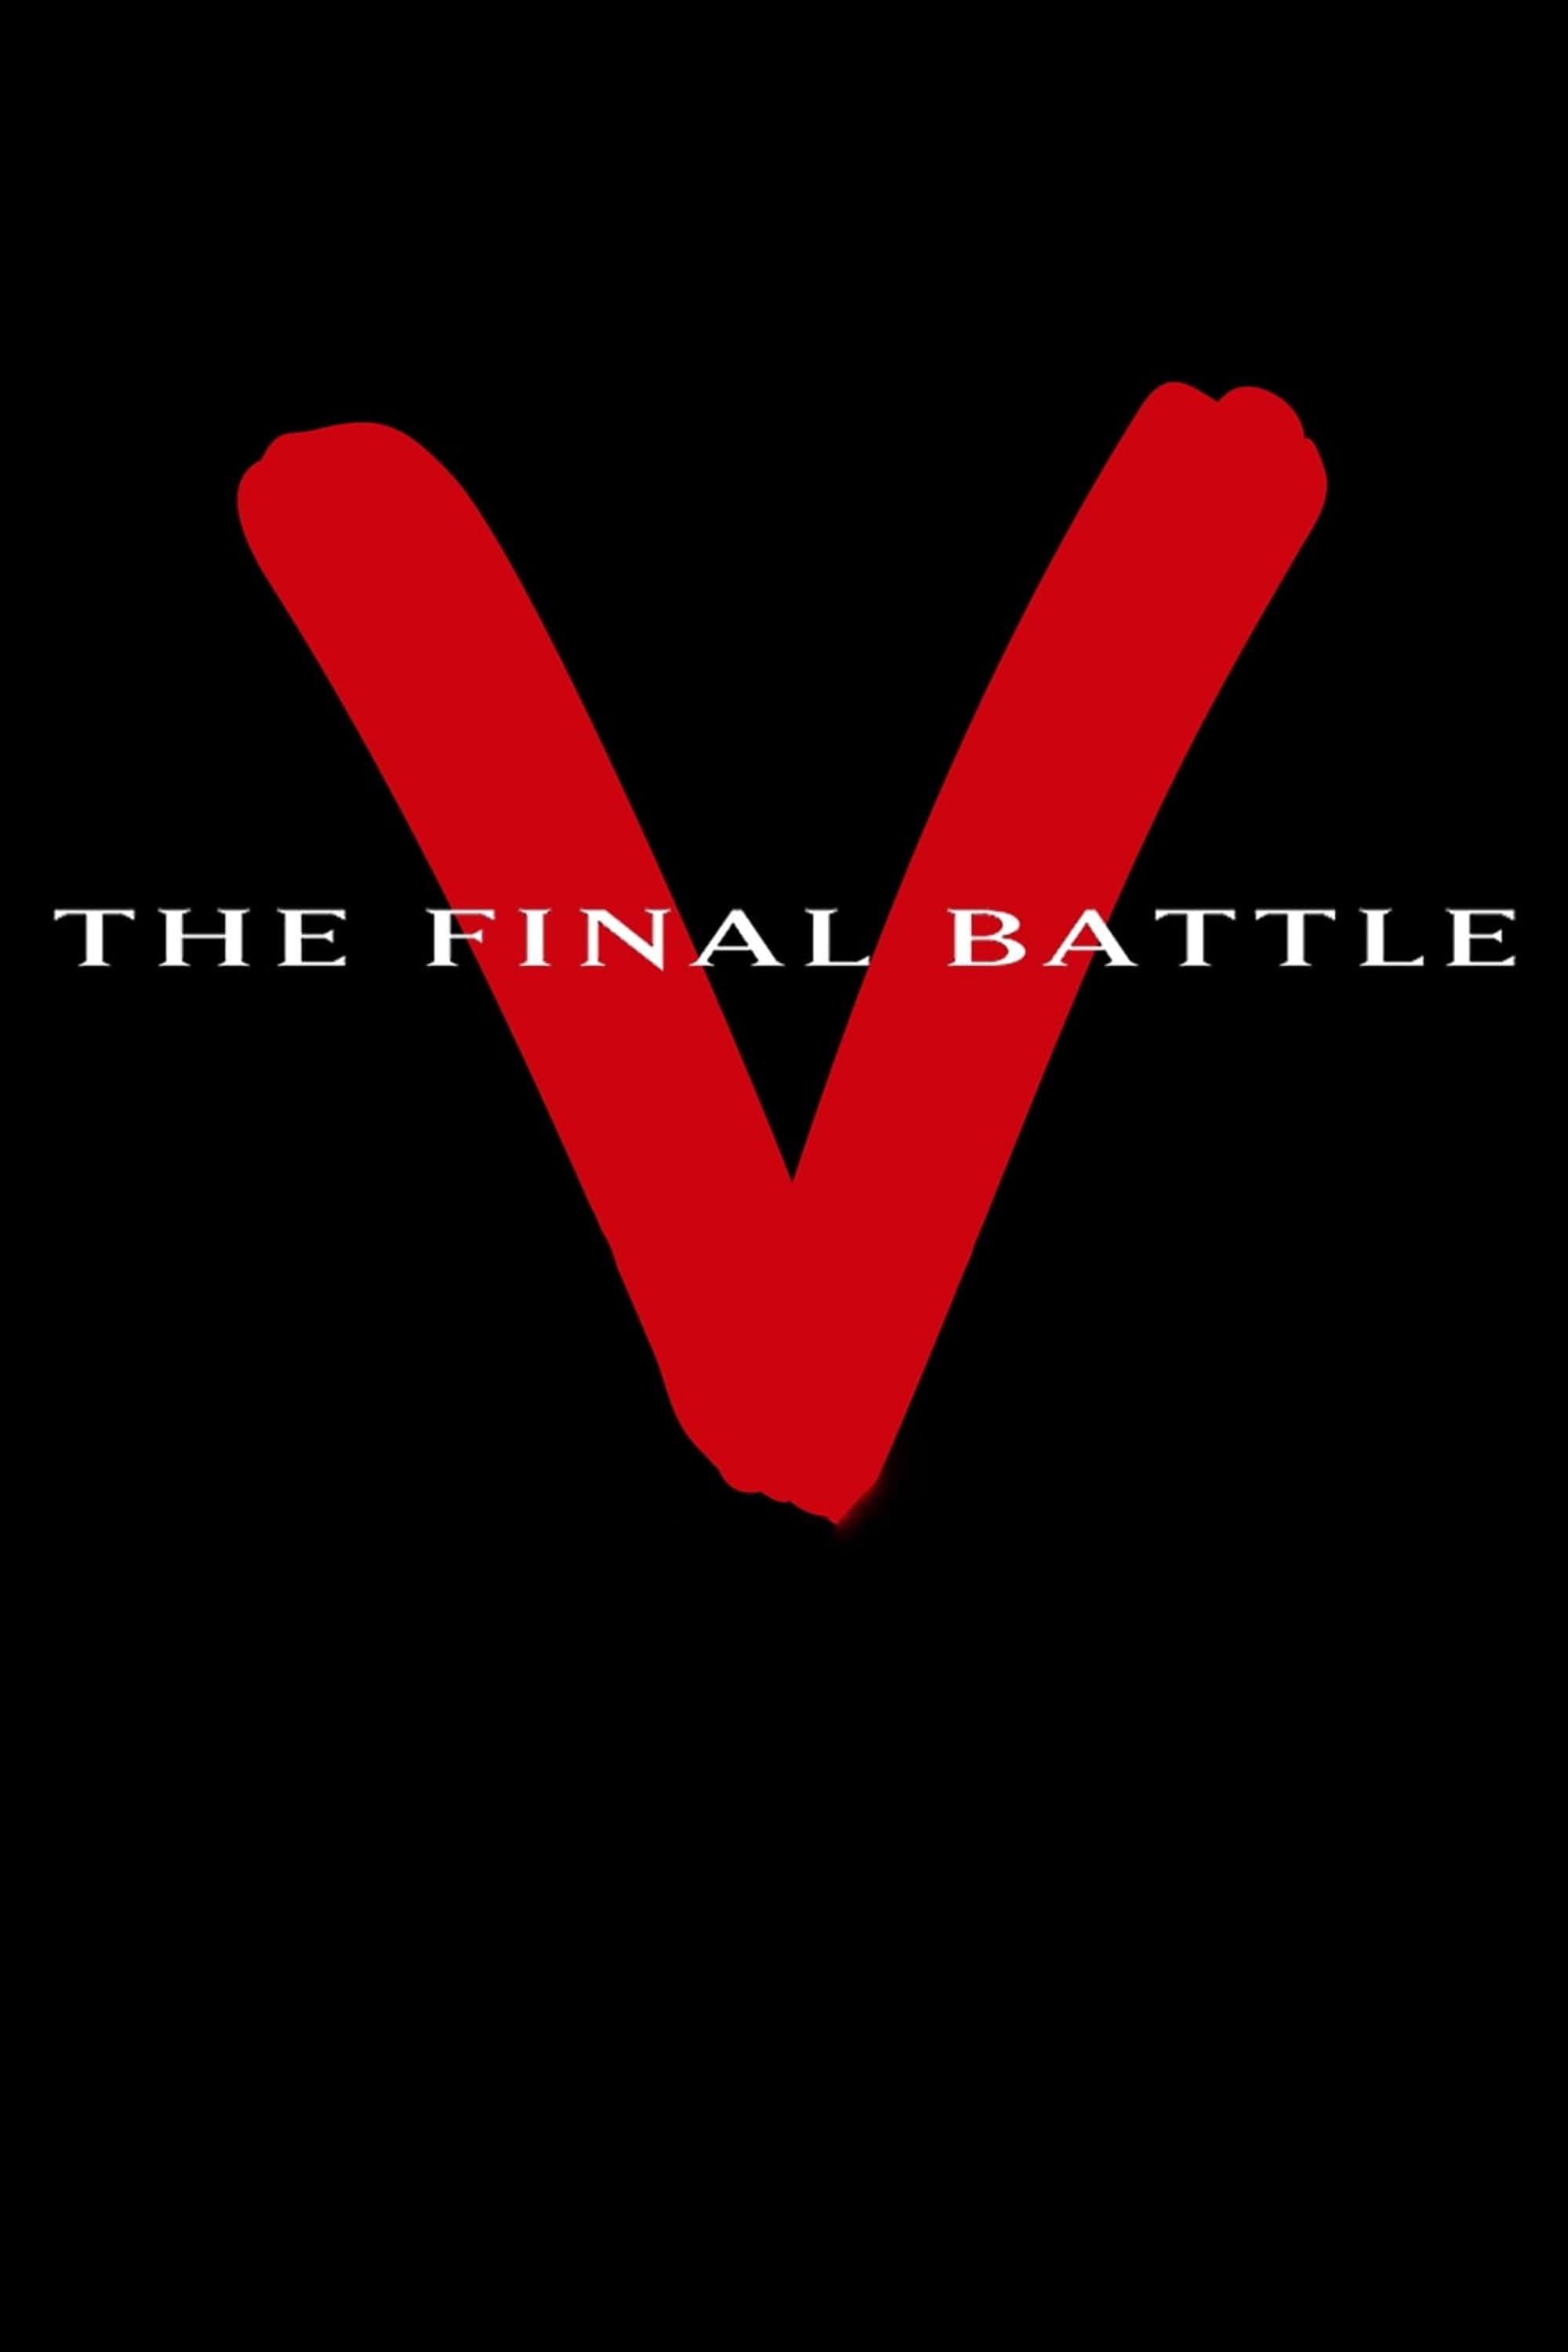 V: The Final Battle poster